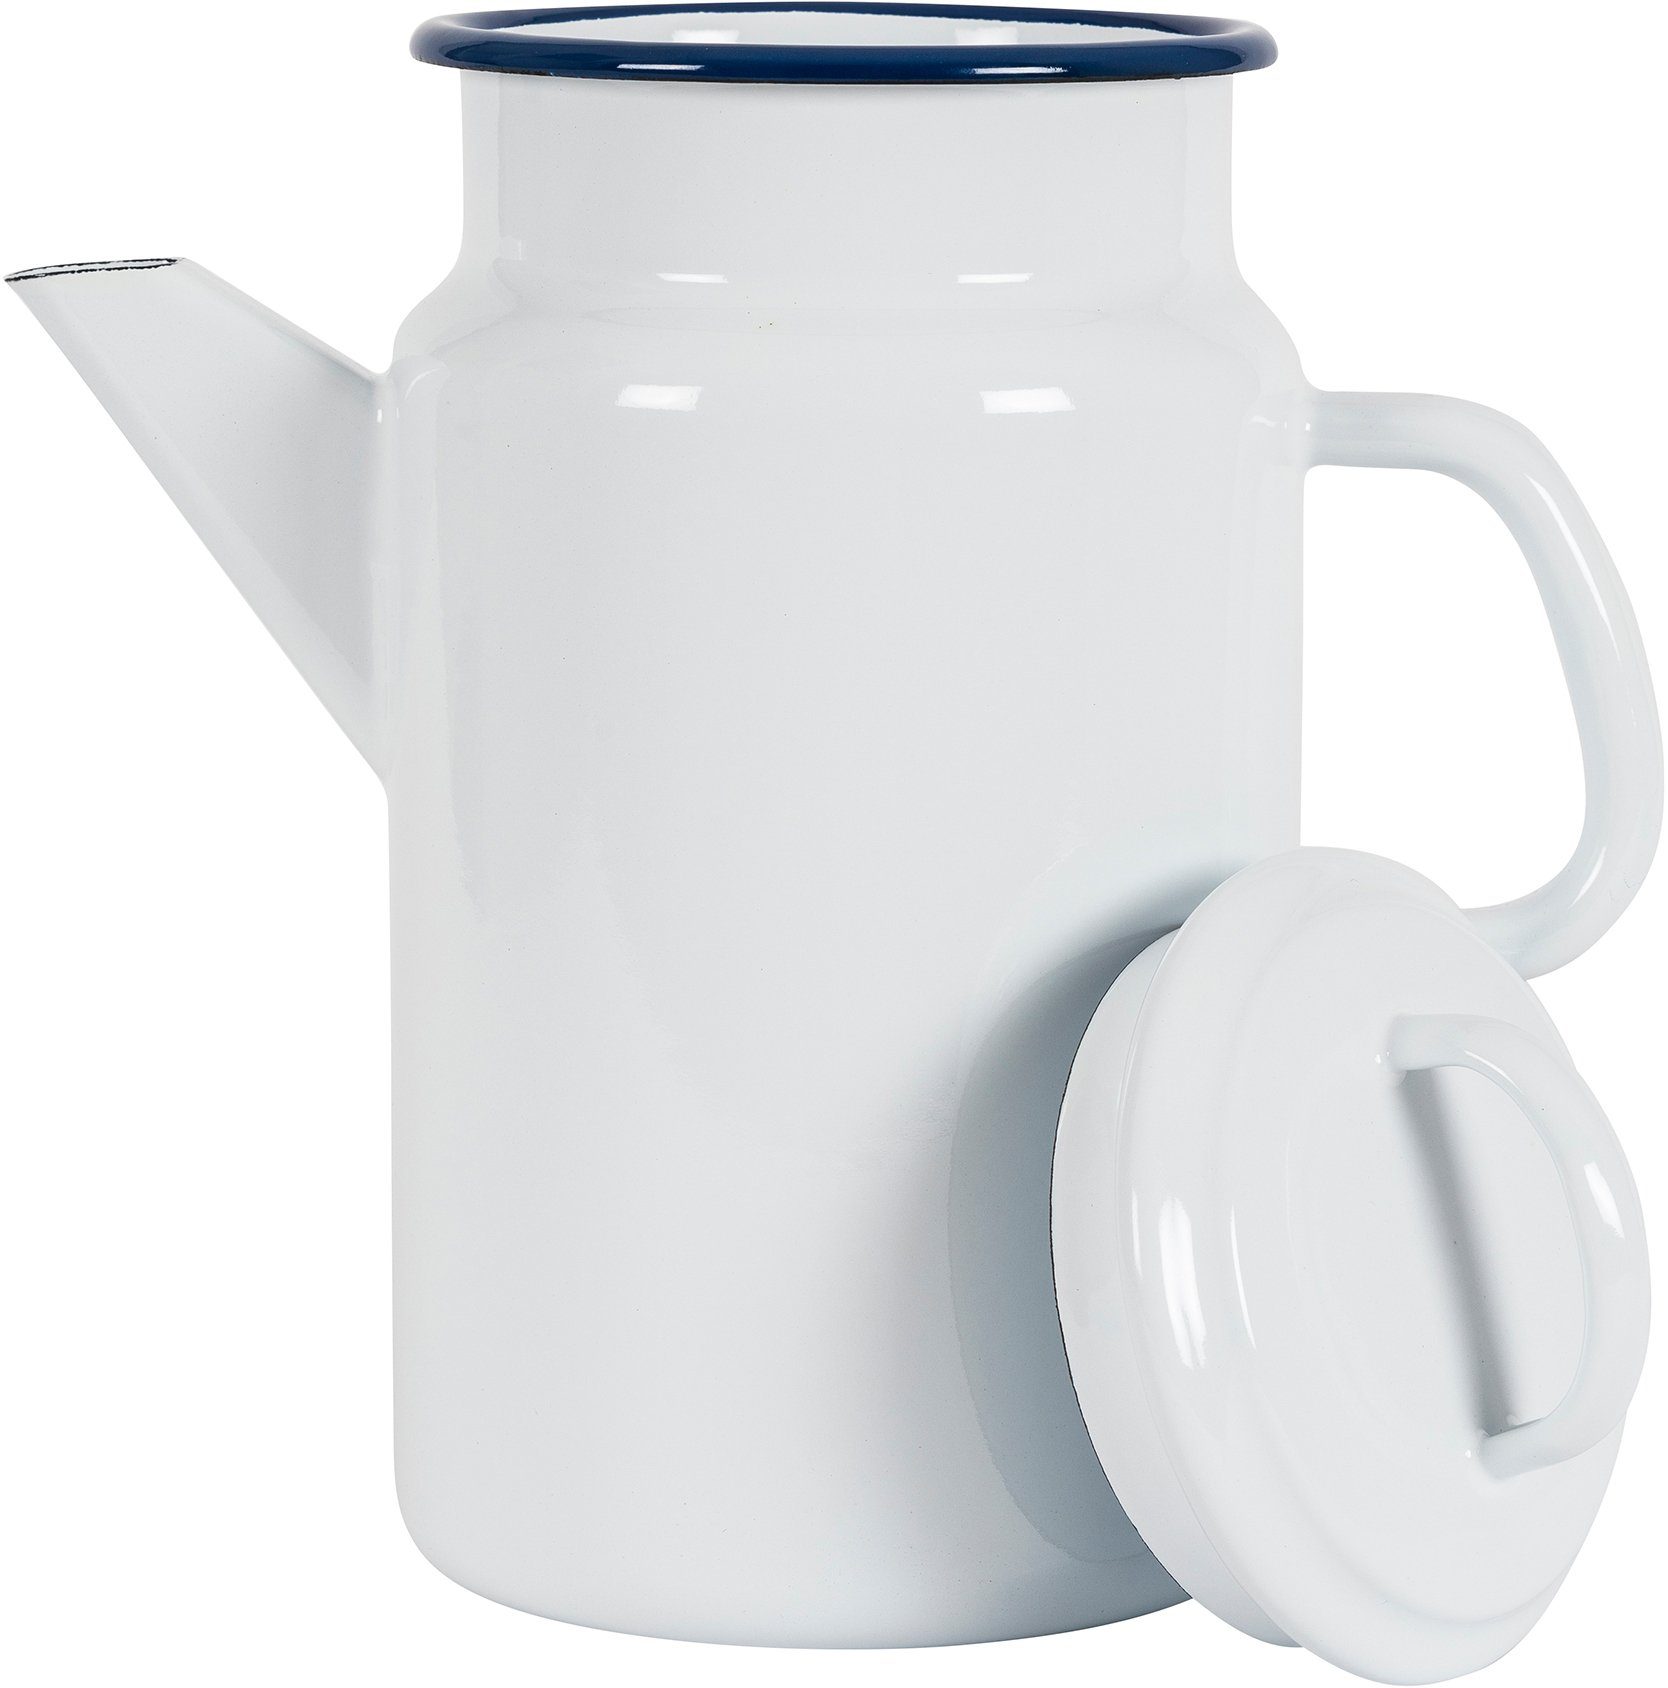 KOCKUMS® Teekanne Jernverk, 2 Emaille, weiß vereint einer und in Nachhaltigkeit Retro-Design Teekanne l